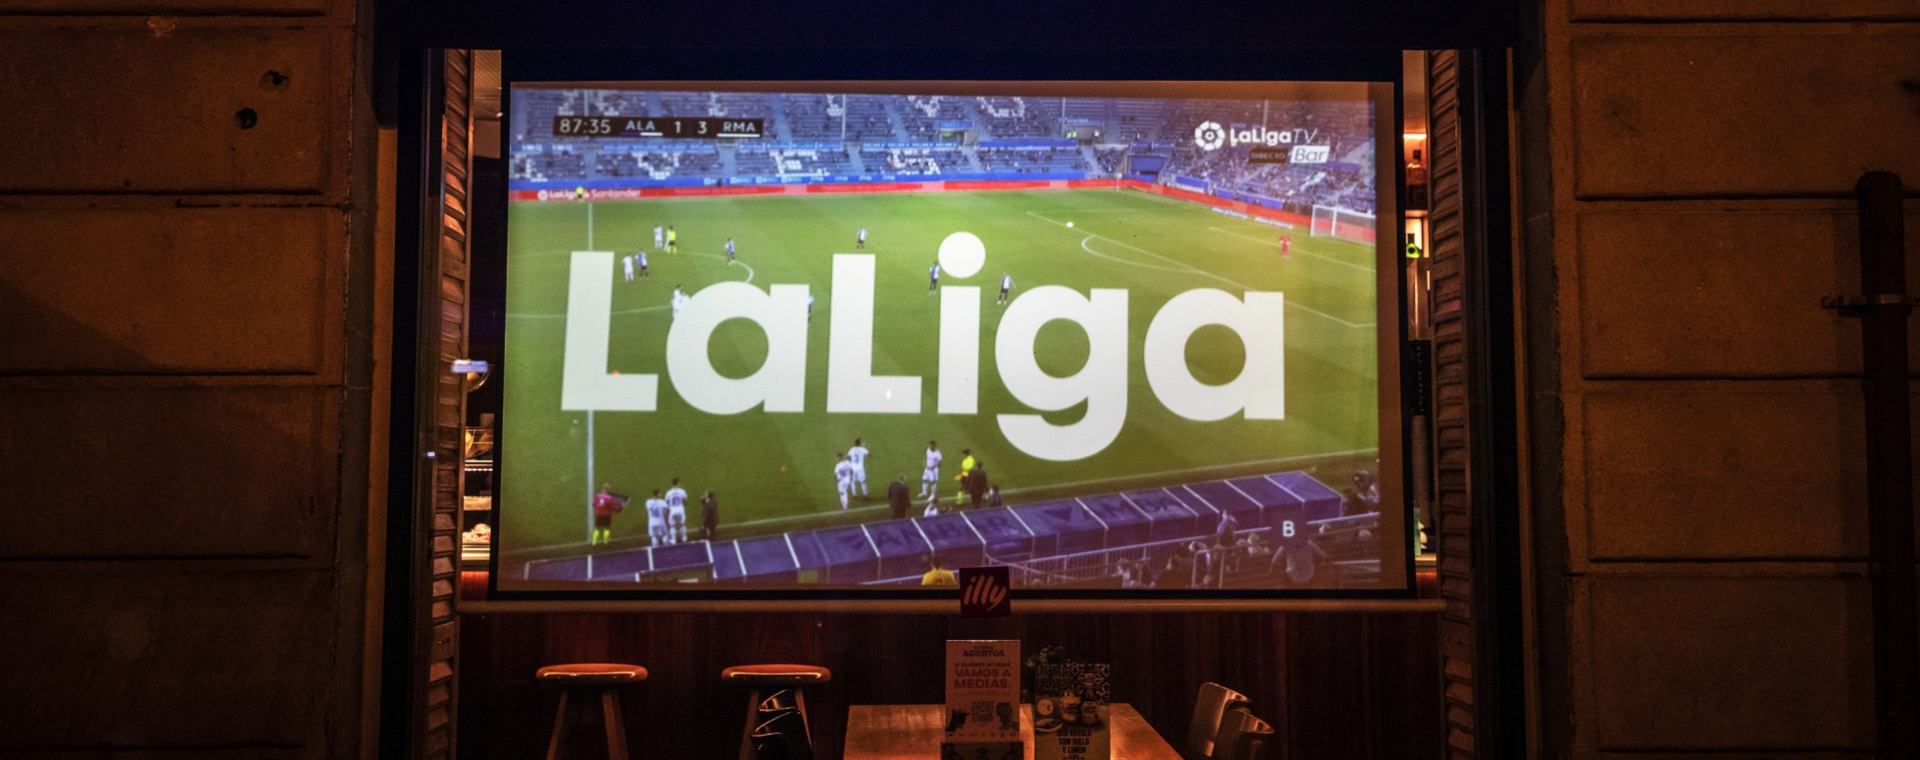 Pertandingan La Liga antara FC Barcelona dan Real Sociedad di televisi di sebuah bar di Barcelona, Spanyol, pada Minggu 15 Agustus 2021.  - Bloomberg